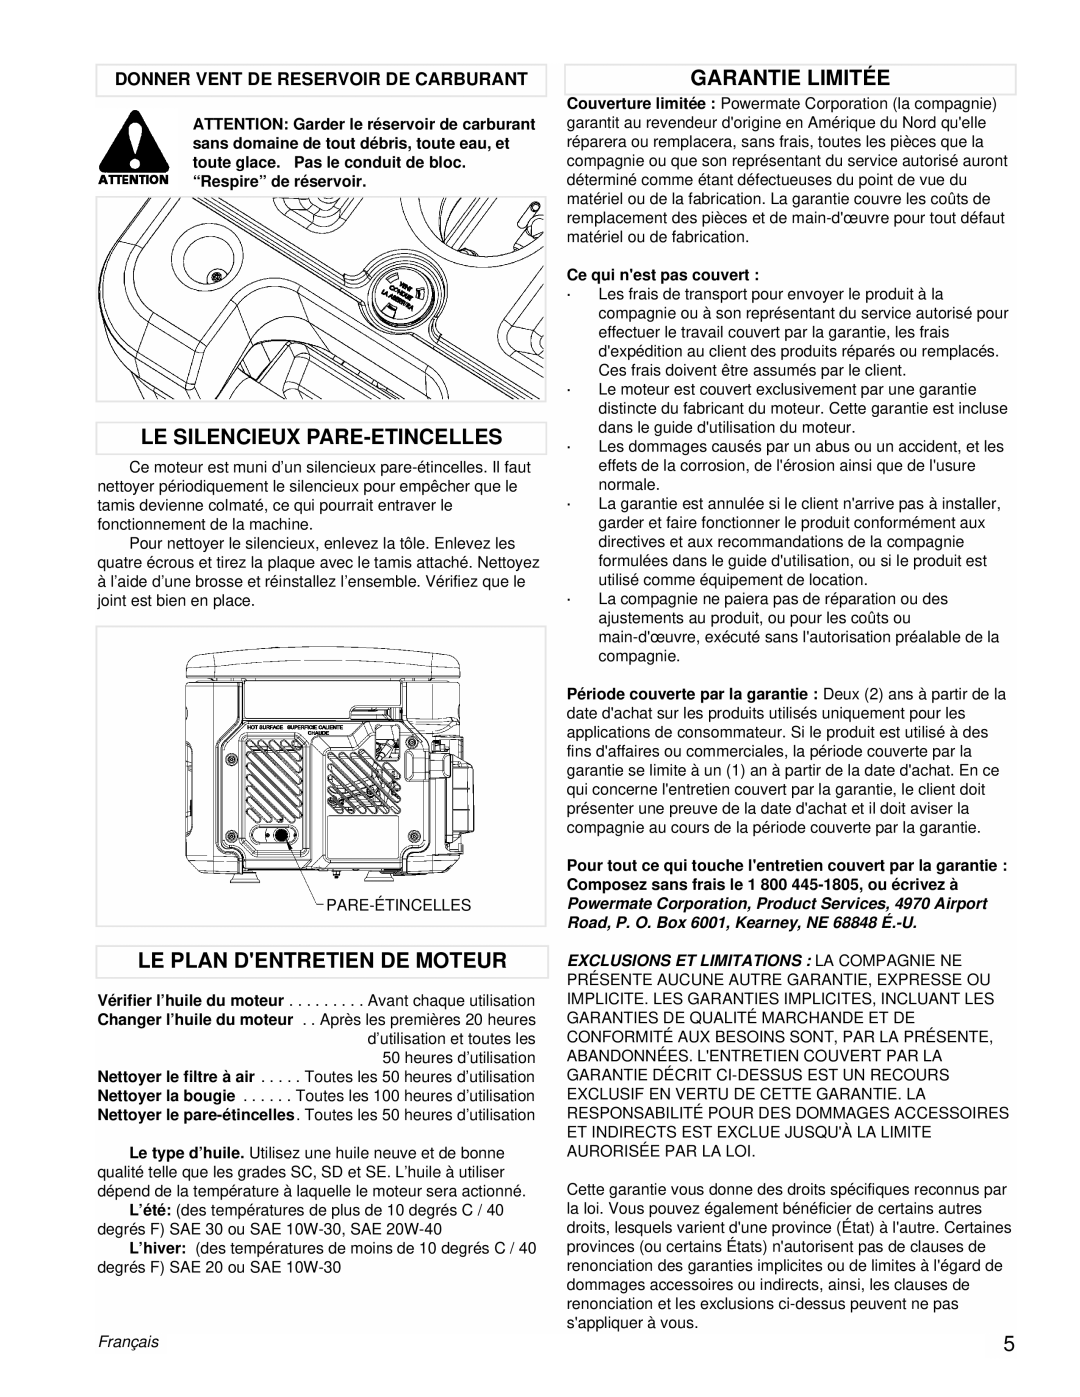 Coleman PM0431802.01 manual Le Silencieux Pare-Etincelles, Le Plan Dentretien De Moteur, Garantie Limitée, Français 